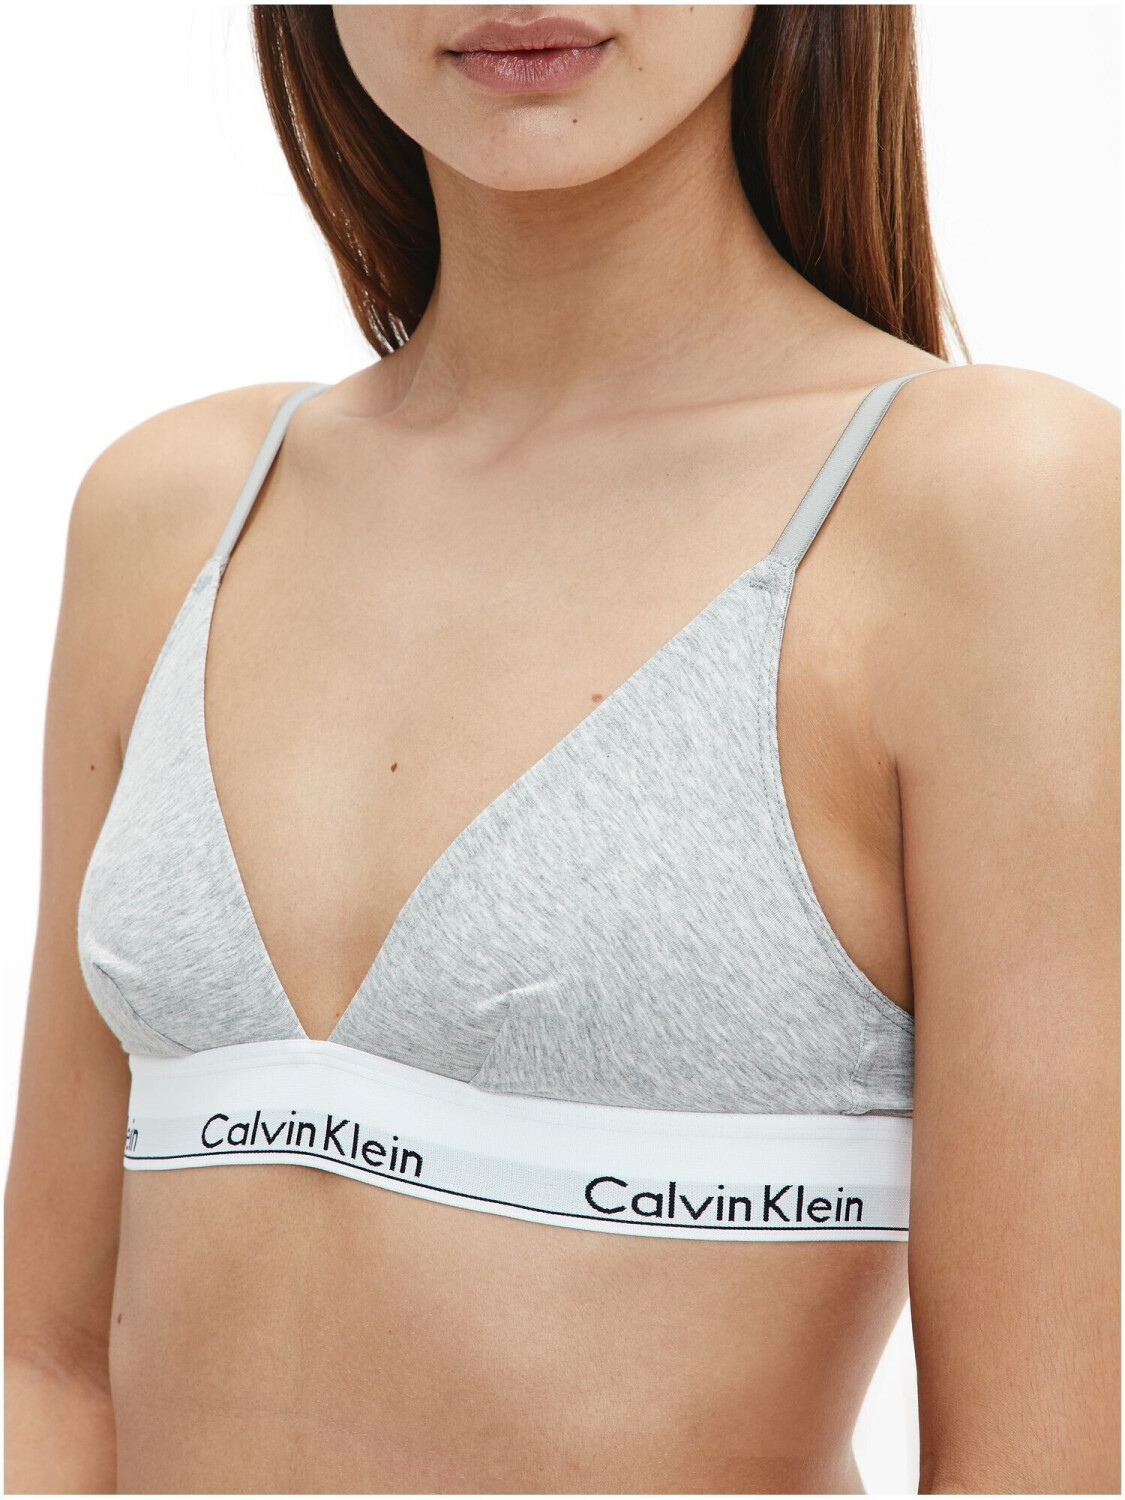 Calvin Klein Triangle Bra Modern Cotton Unlined grey ab 21,99 € |  Preisvergleich bei